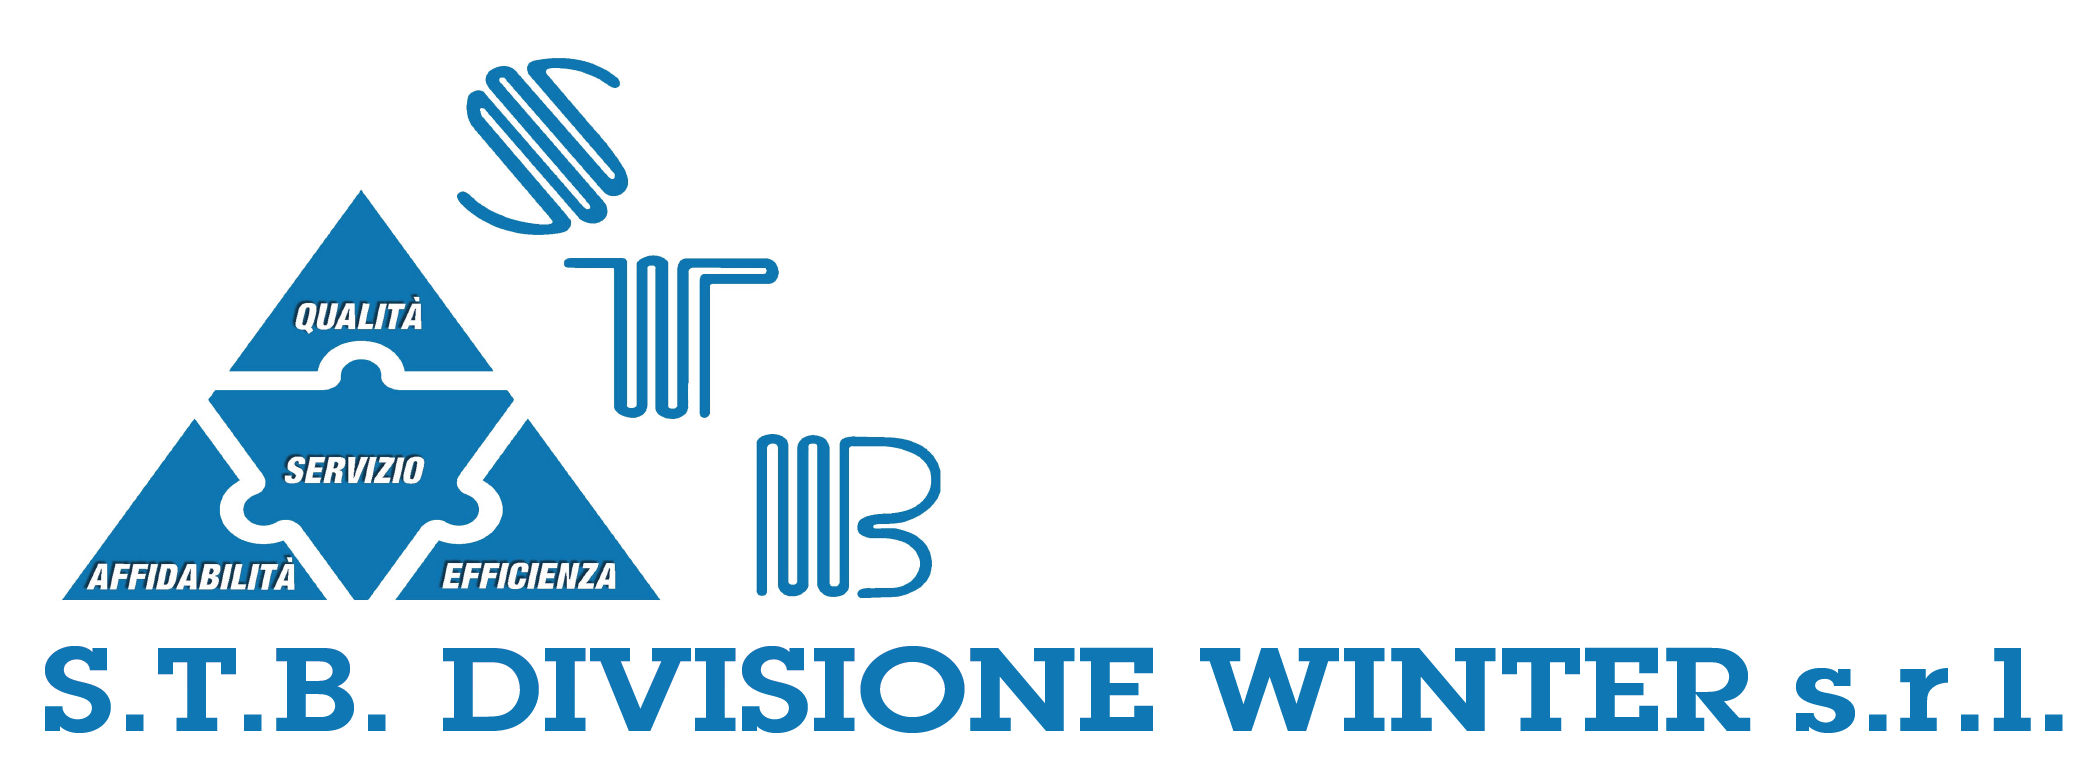 logo stb divisione winter